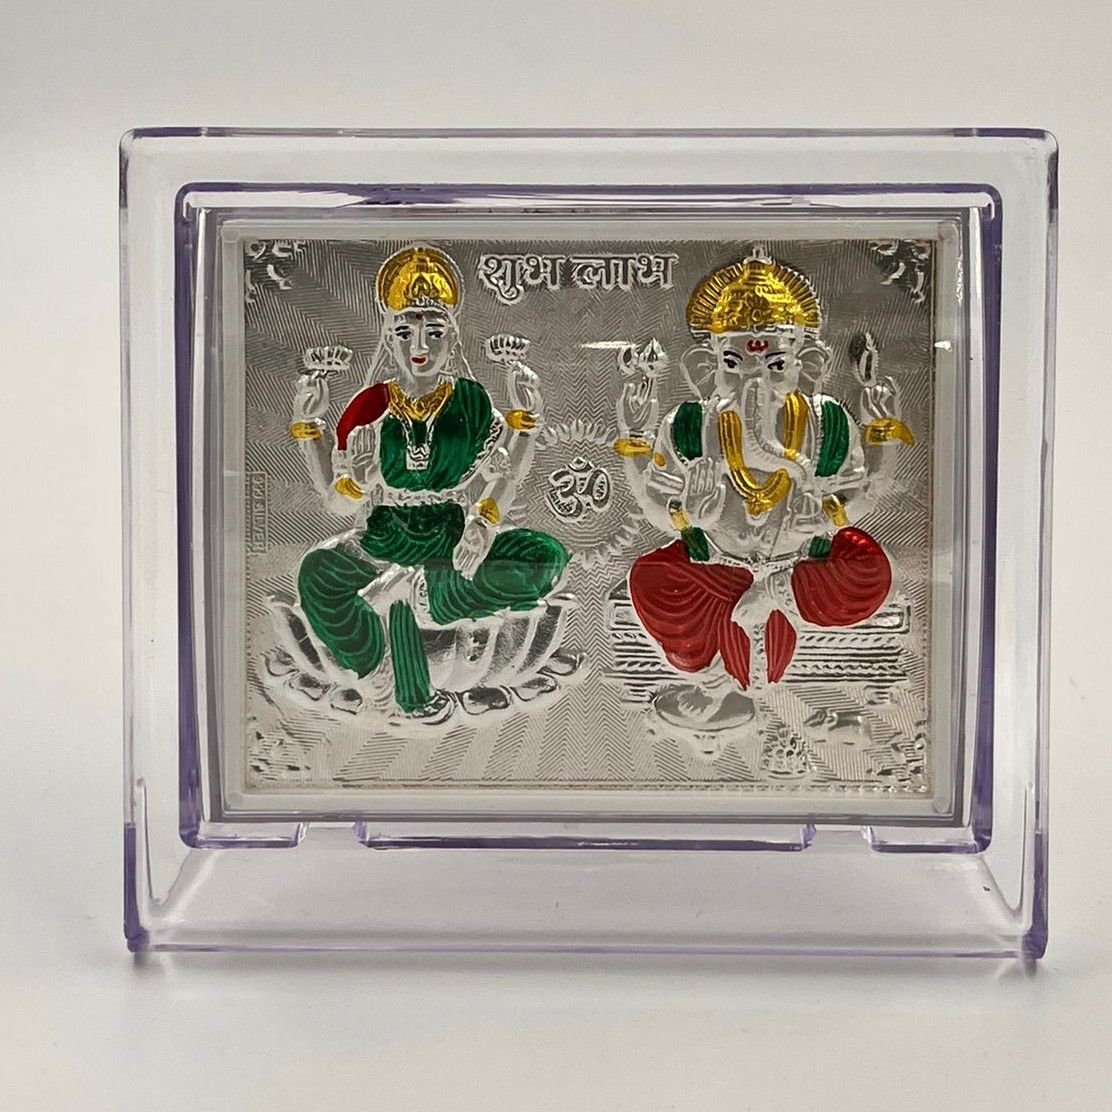 999 silver laxmi ganesh ji Meenakari idols